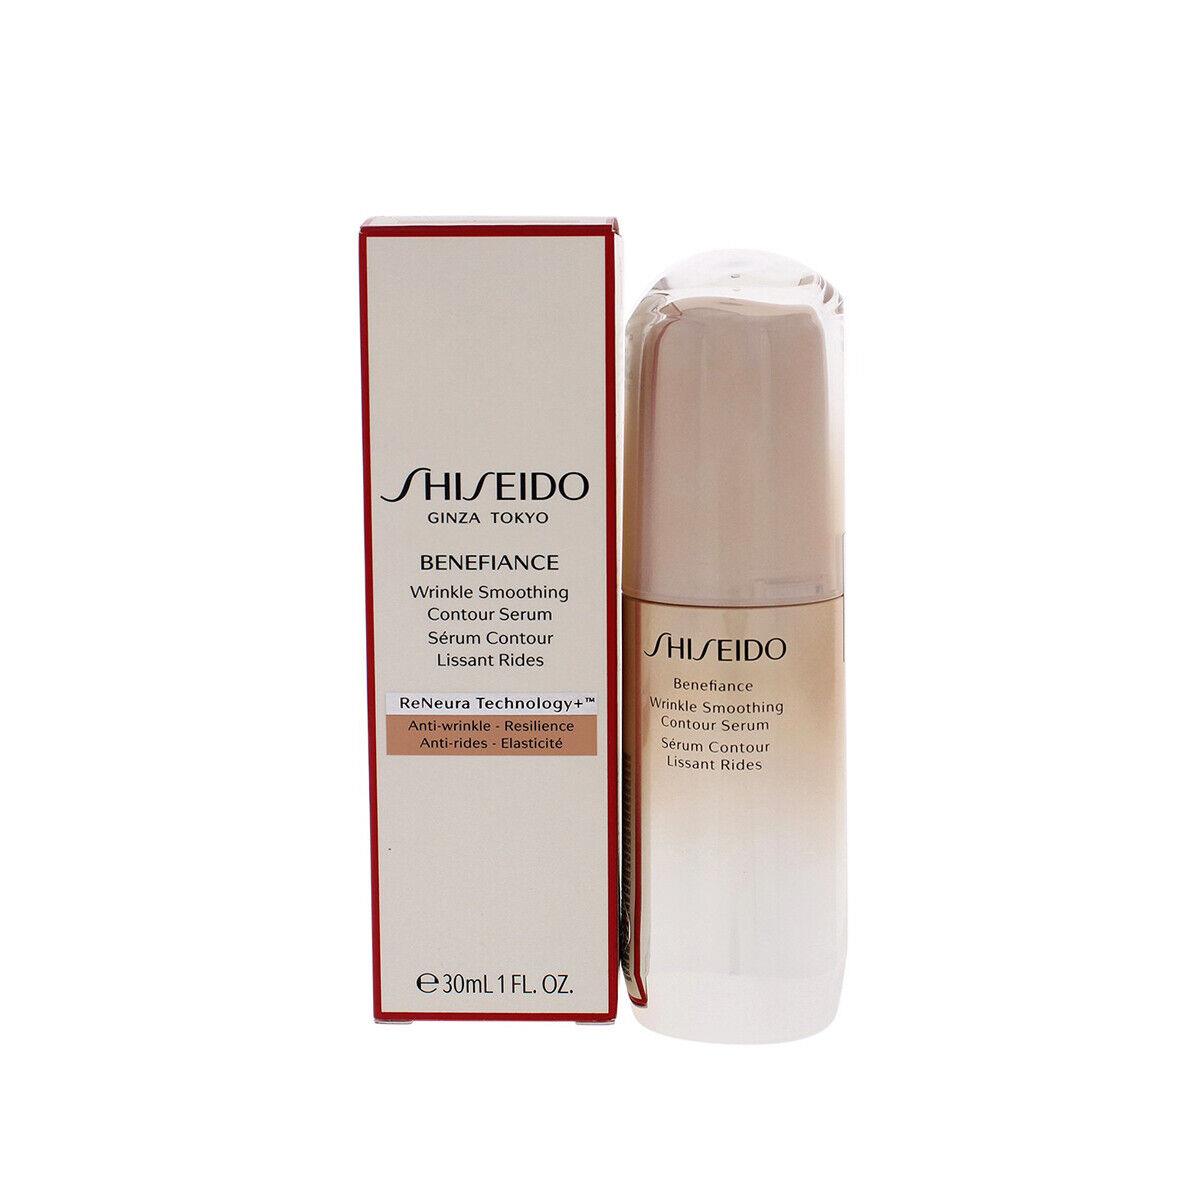 Shiseido Benefiance Wrinkle Smoothing Contour Serum - Full Size 30mL / 1 Oz